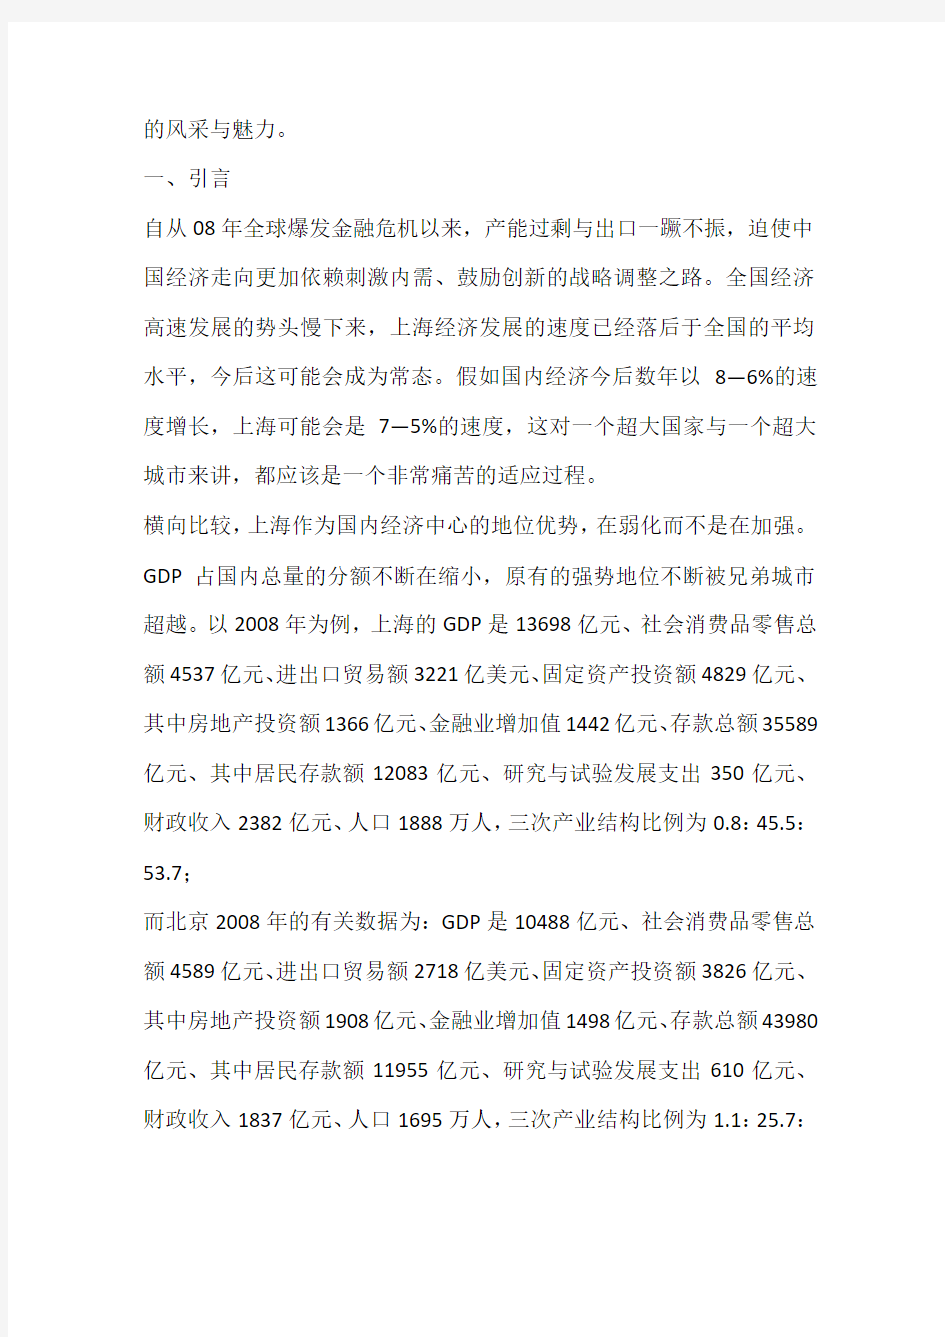 2010年后中国与上海的经济社会发展战略策略(一)